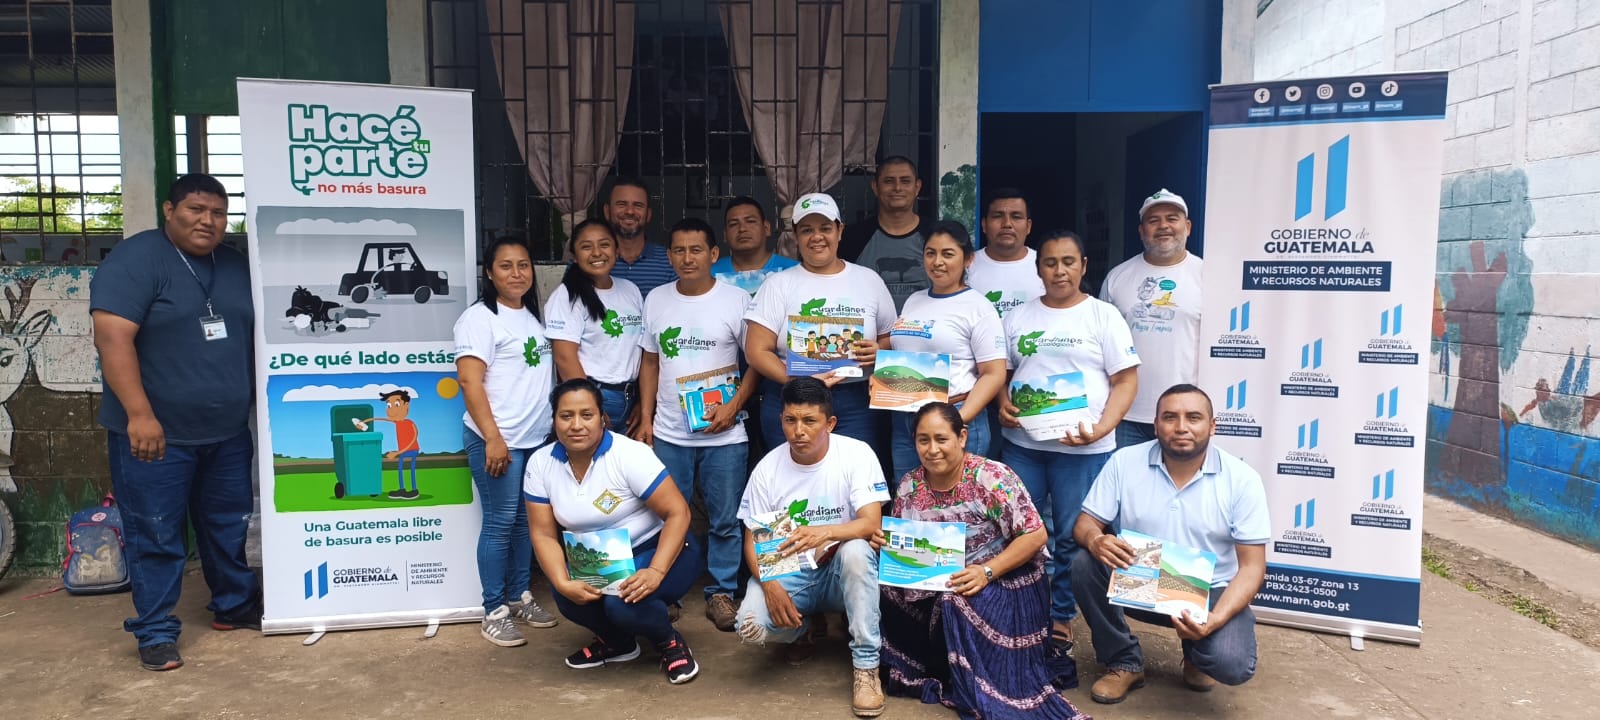 Educación ambiental llega a comunidad en el parque Laguna del Tigre